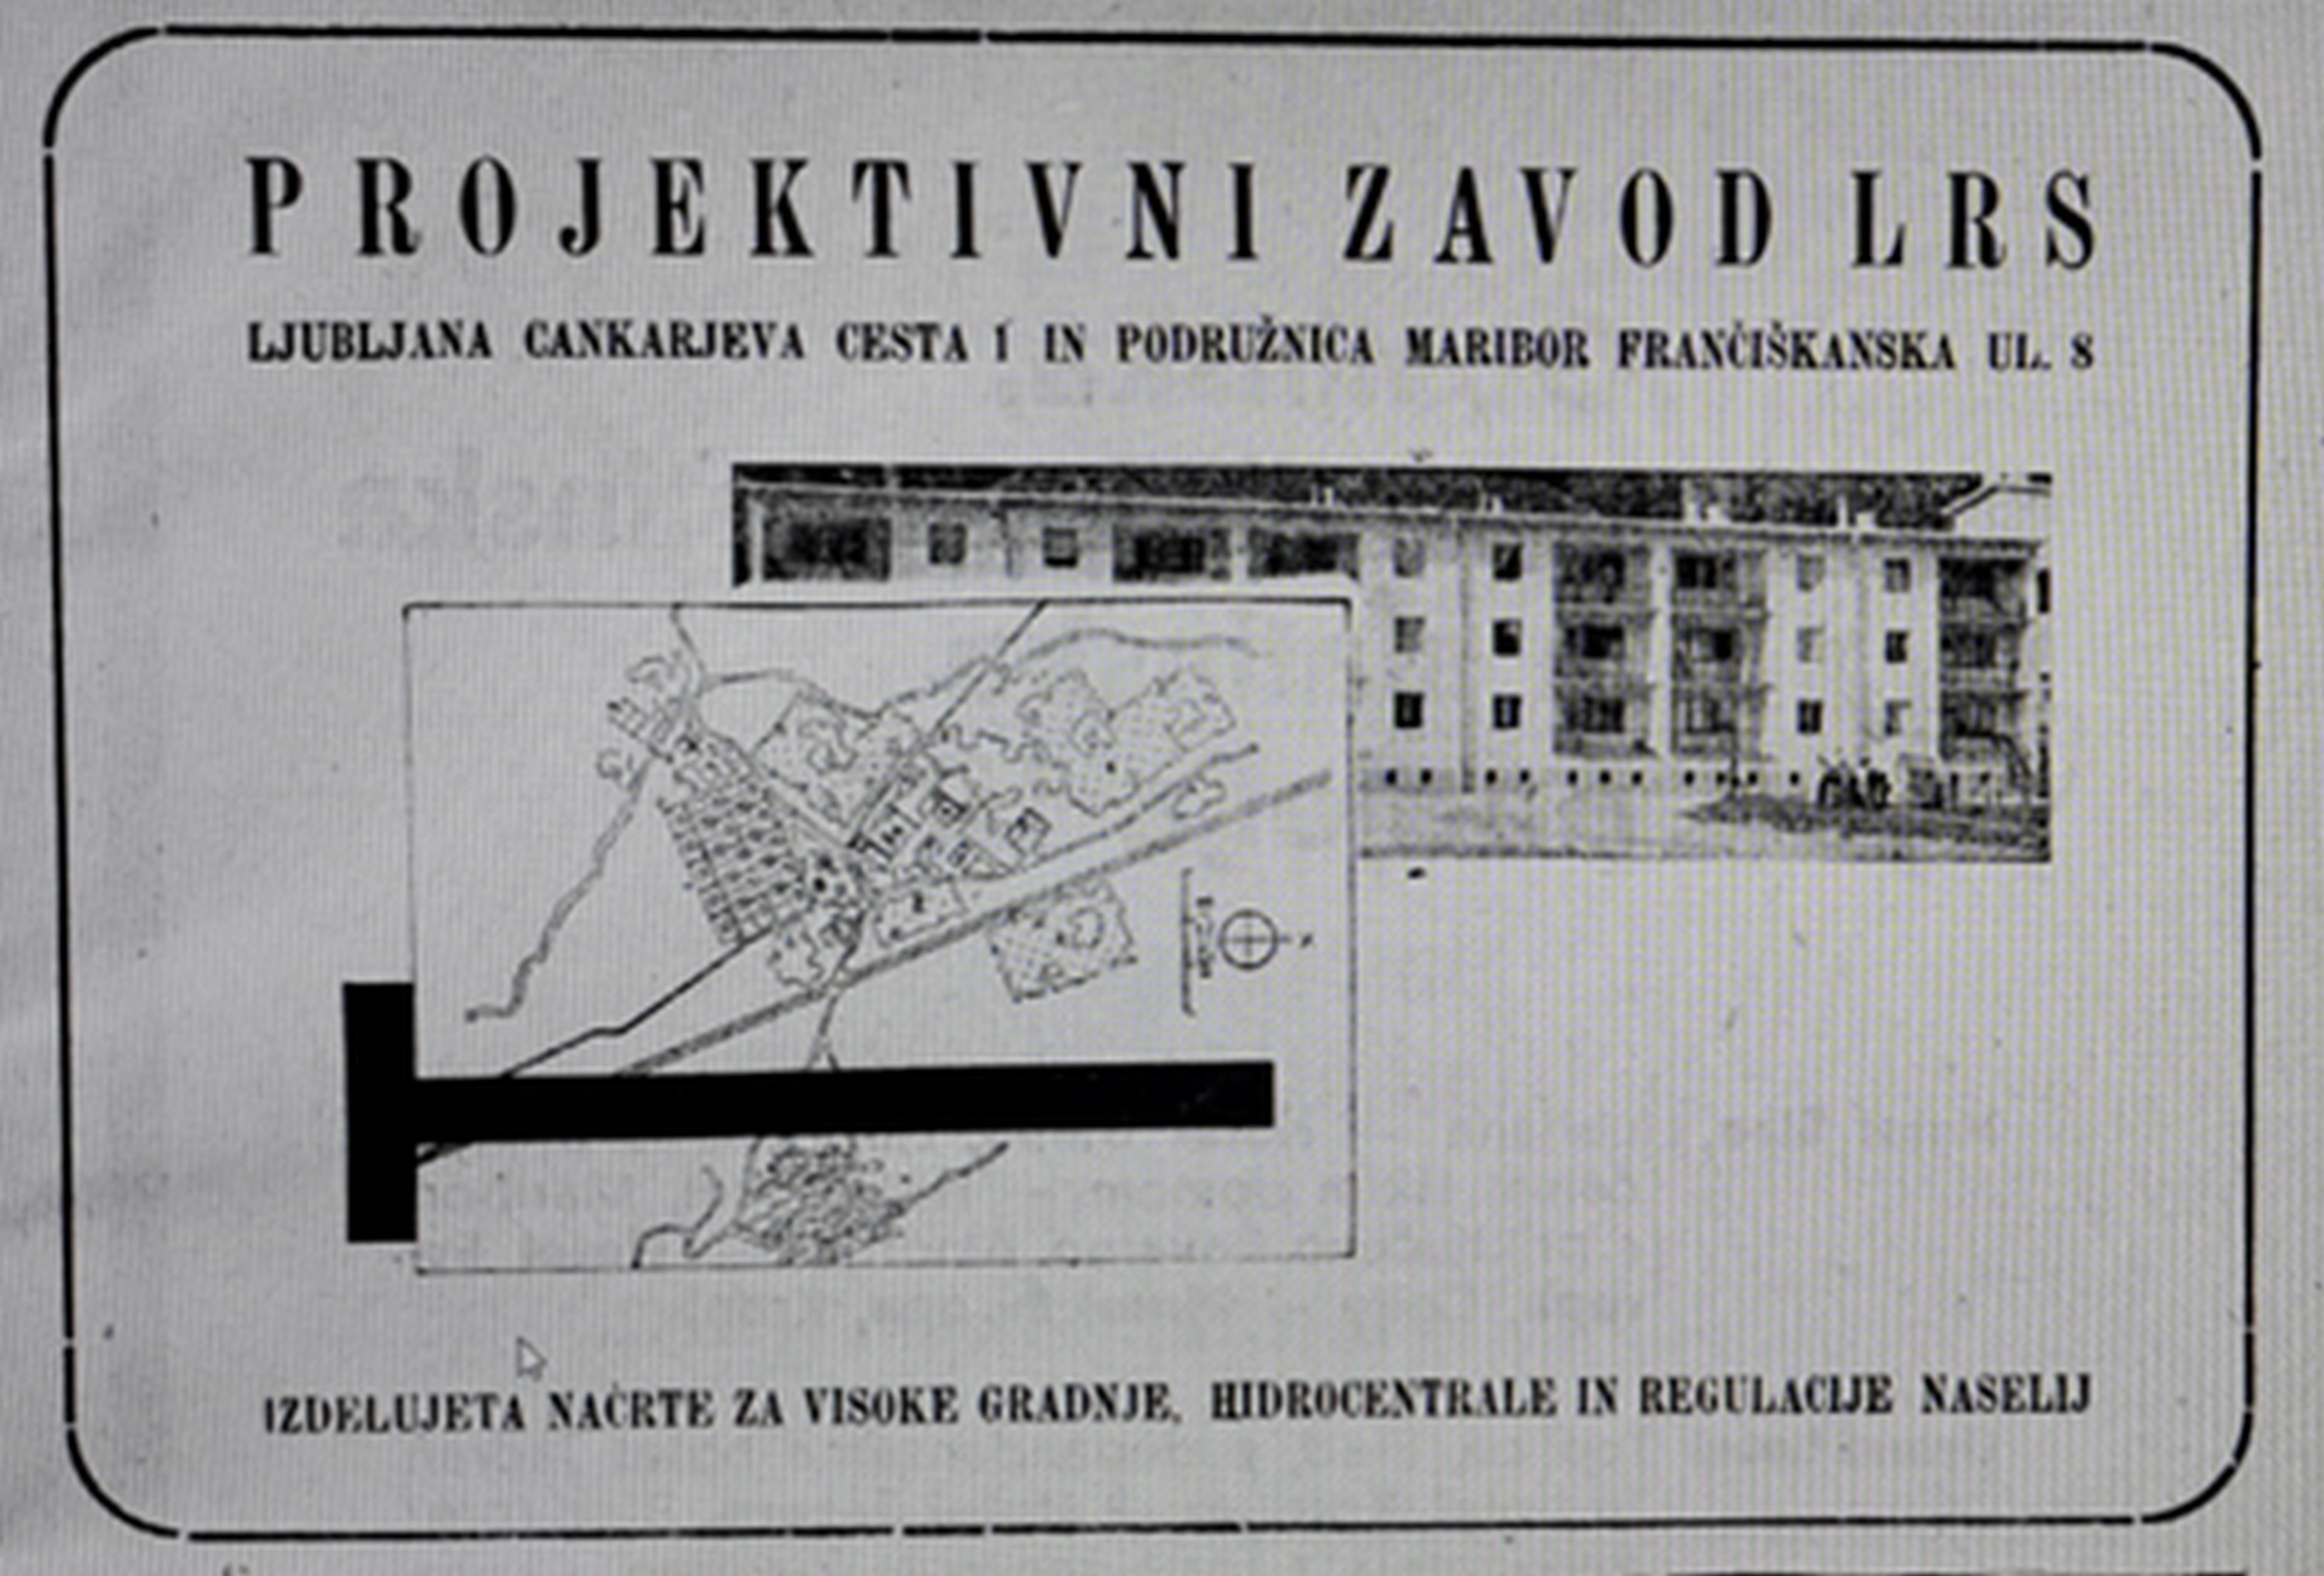 Slika 5: Oglas v Koledarju Osvobodilne fronte Slovenije leta 1948 za
                        Projektivni zavod LRS, ki je izdeloval načrte za visoke gradnje,
                        hidrocentrale in regulacije naselij. 